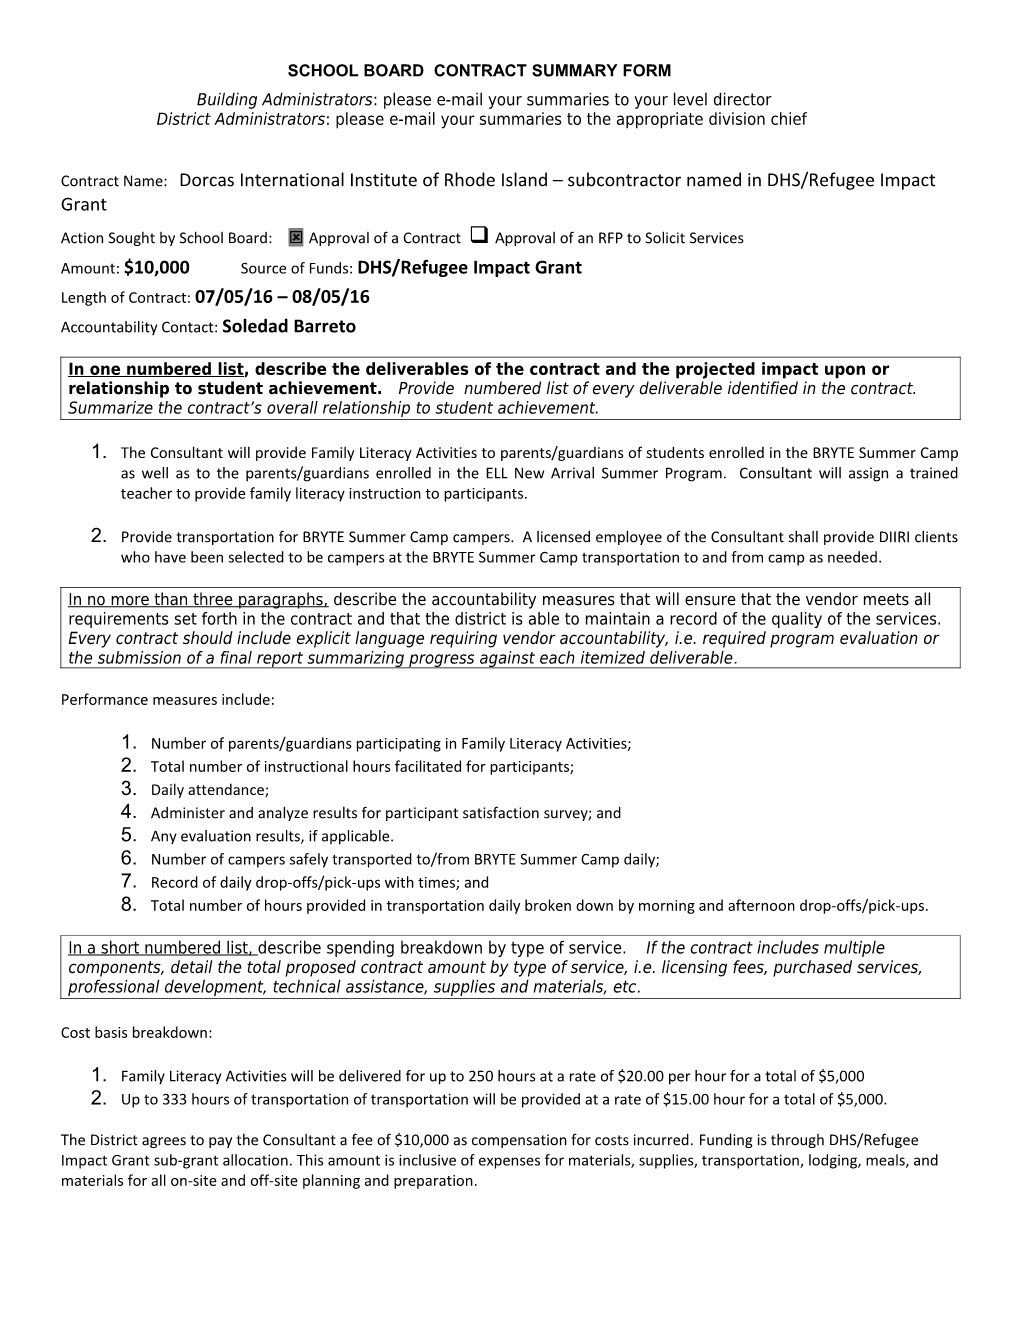 School Board Contract Summary Form